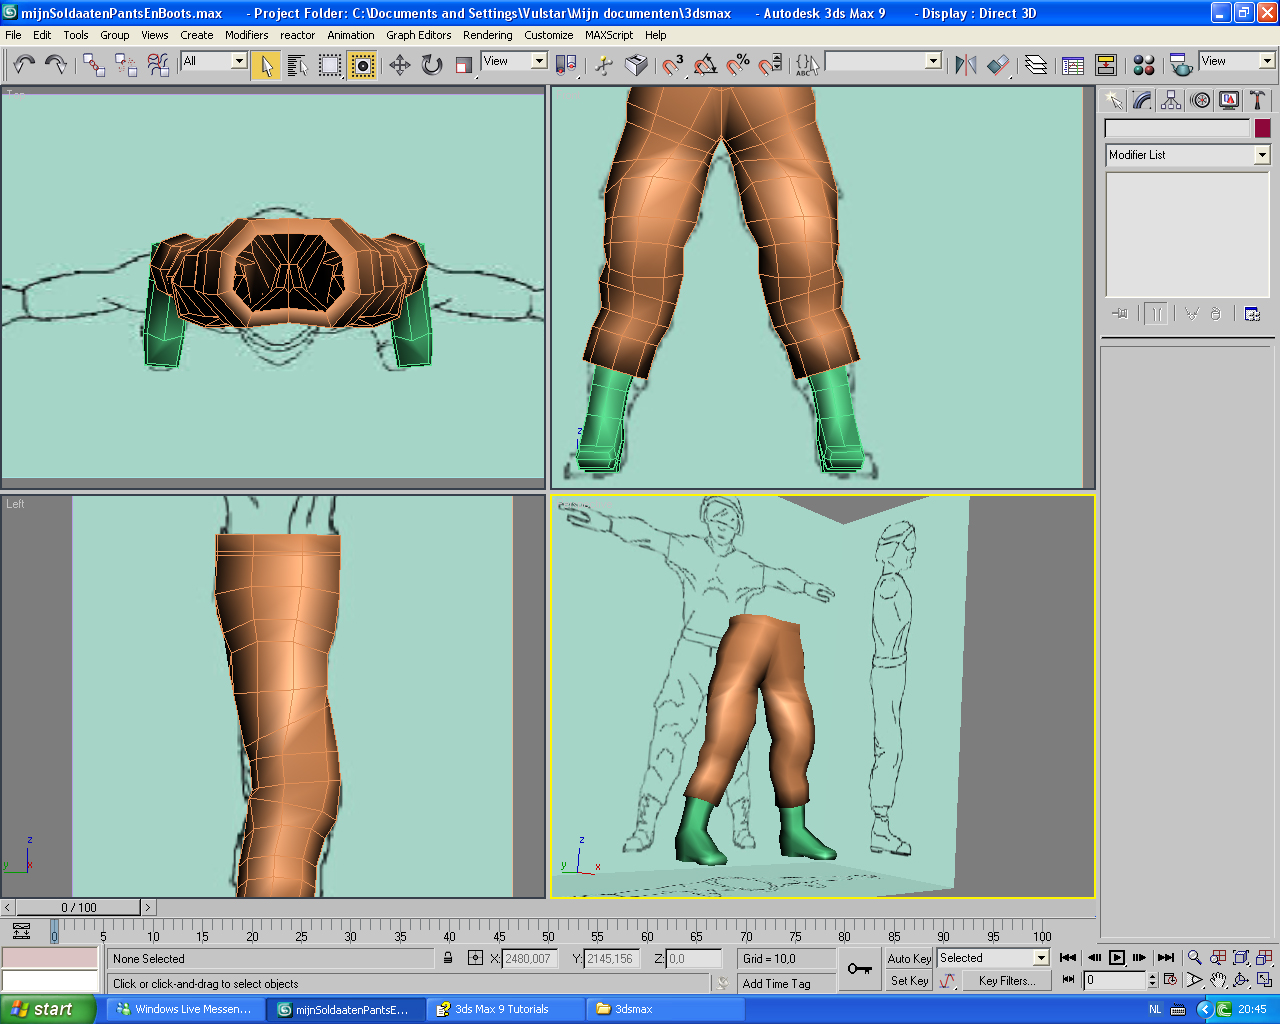 3D ontwerp van het onderlichaam voor een personage.